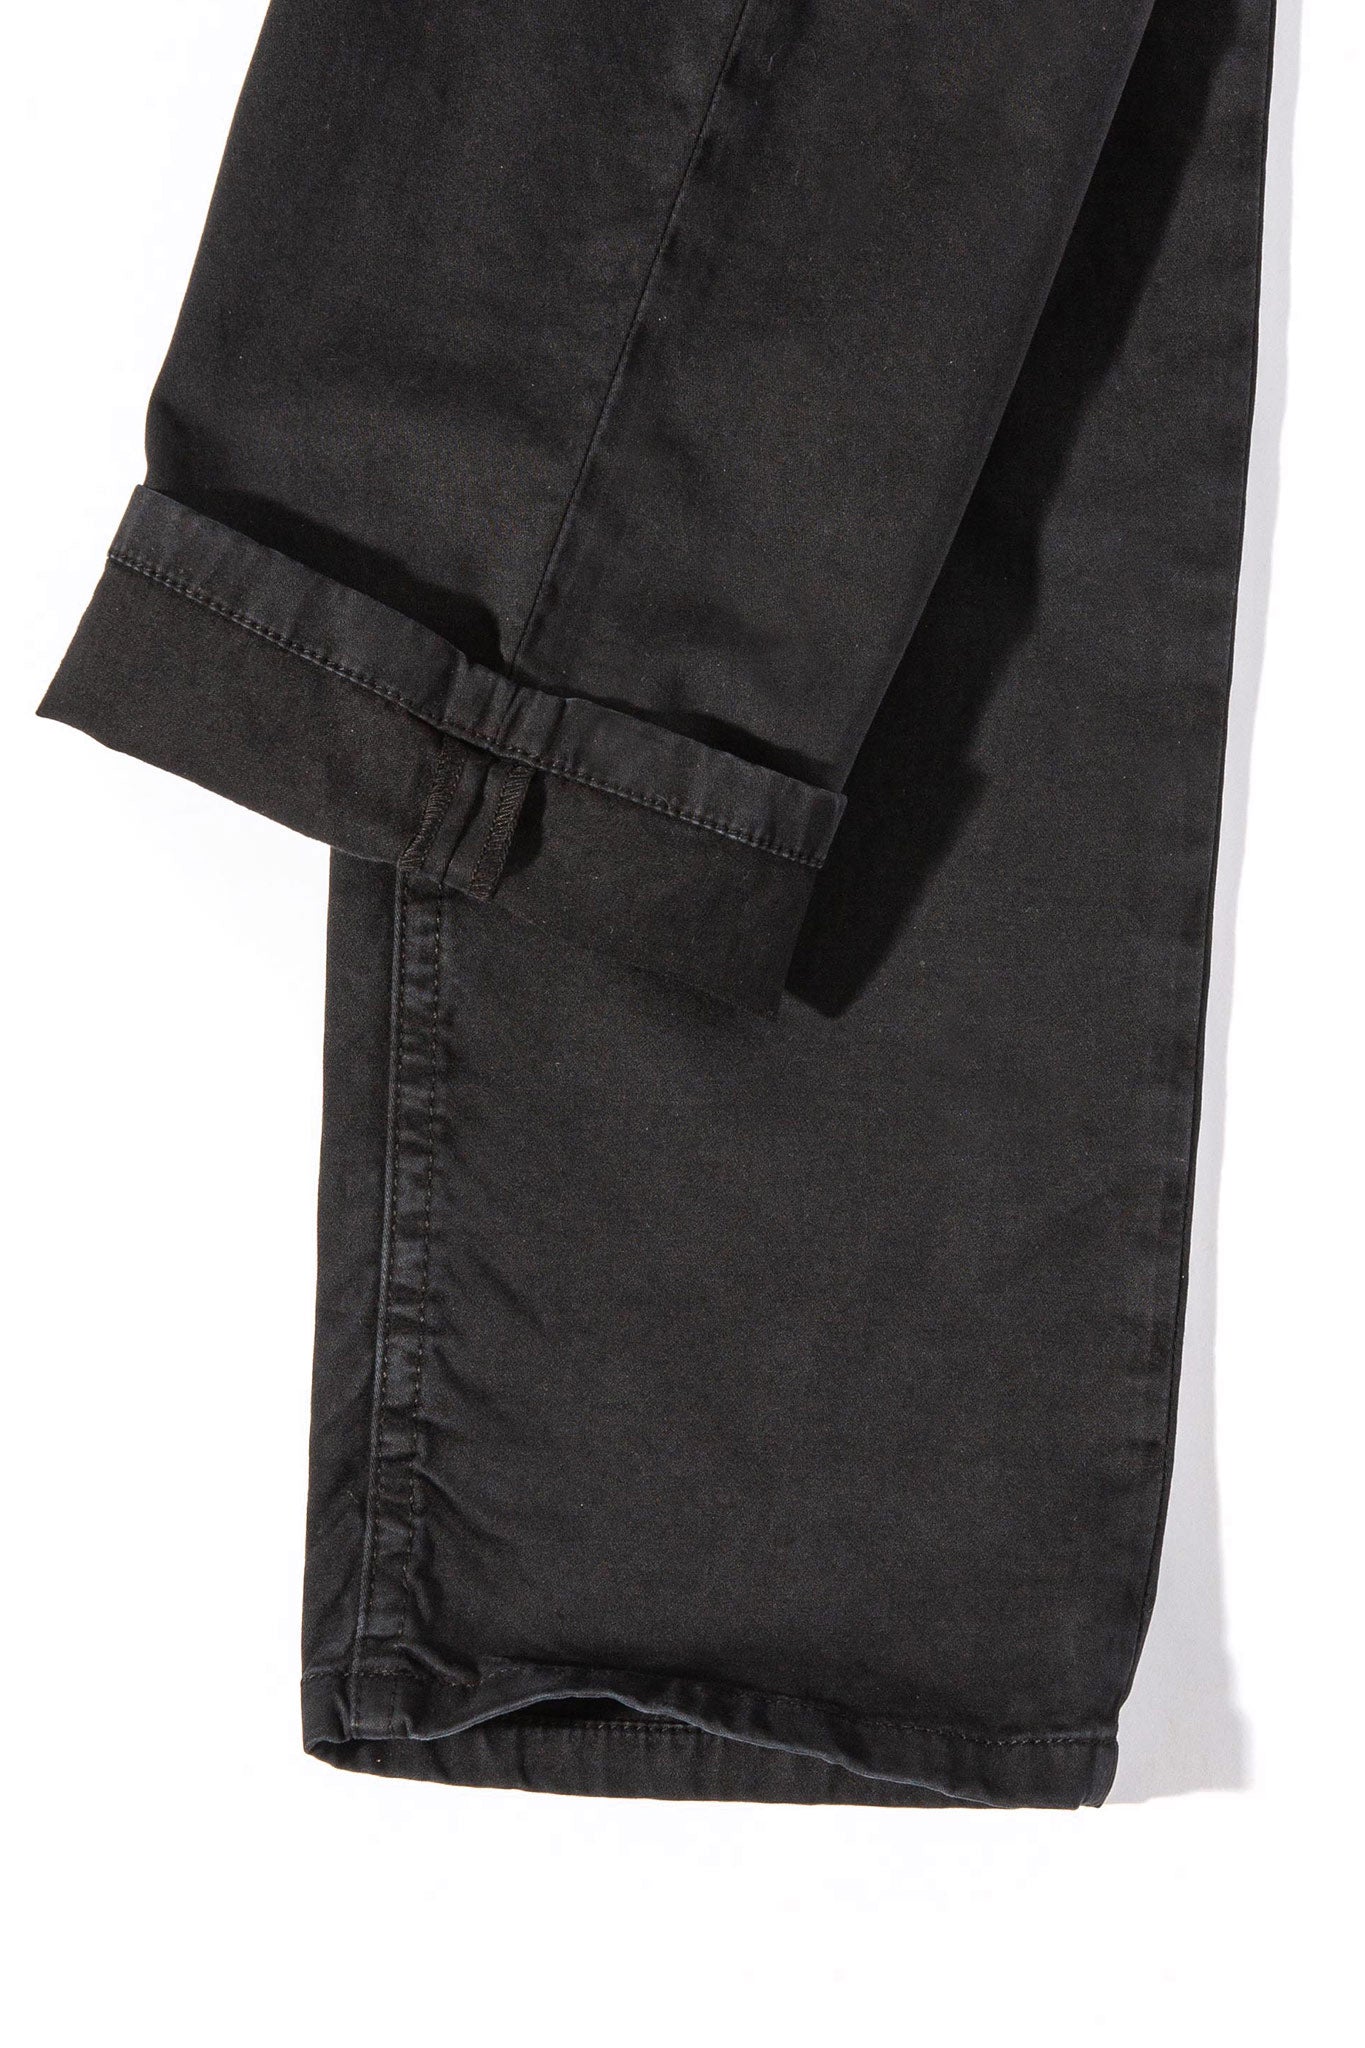 Gunnison Soft Touch In Black | Mens - Pants - 5 Pocket | Teleria Zed